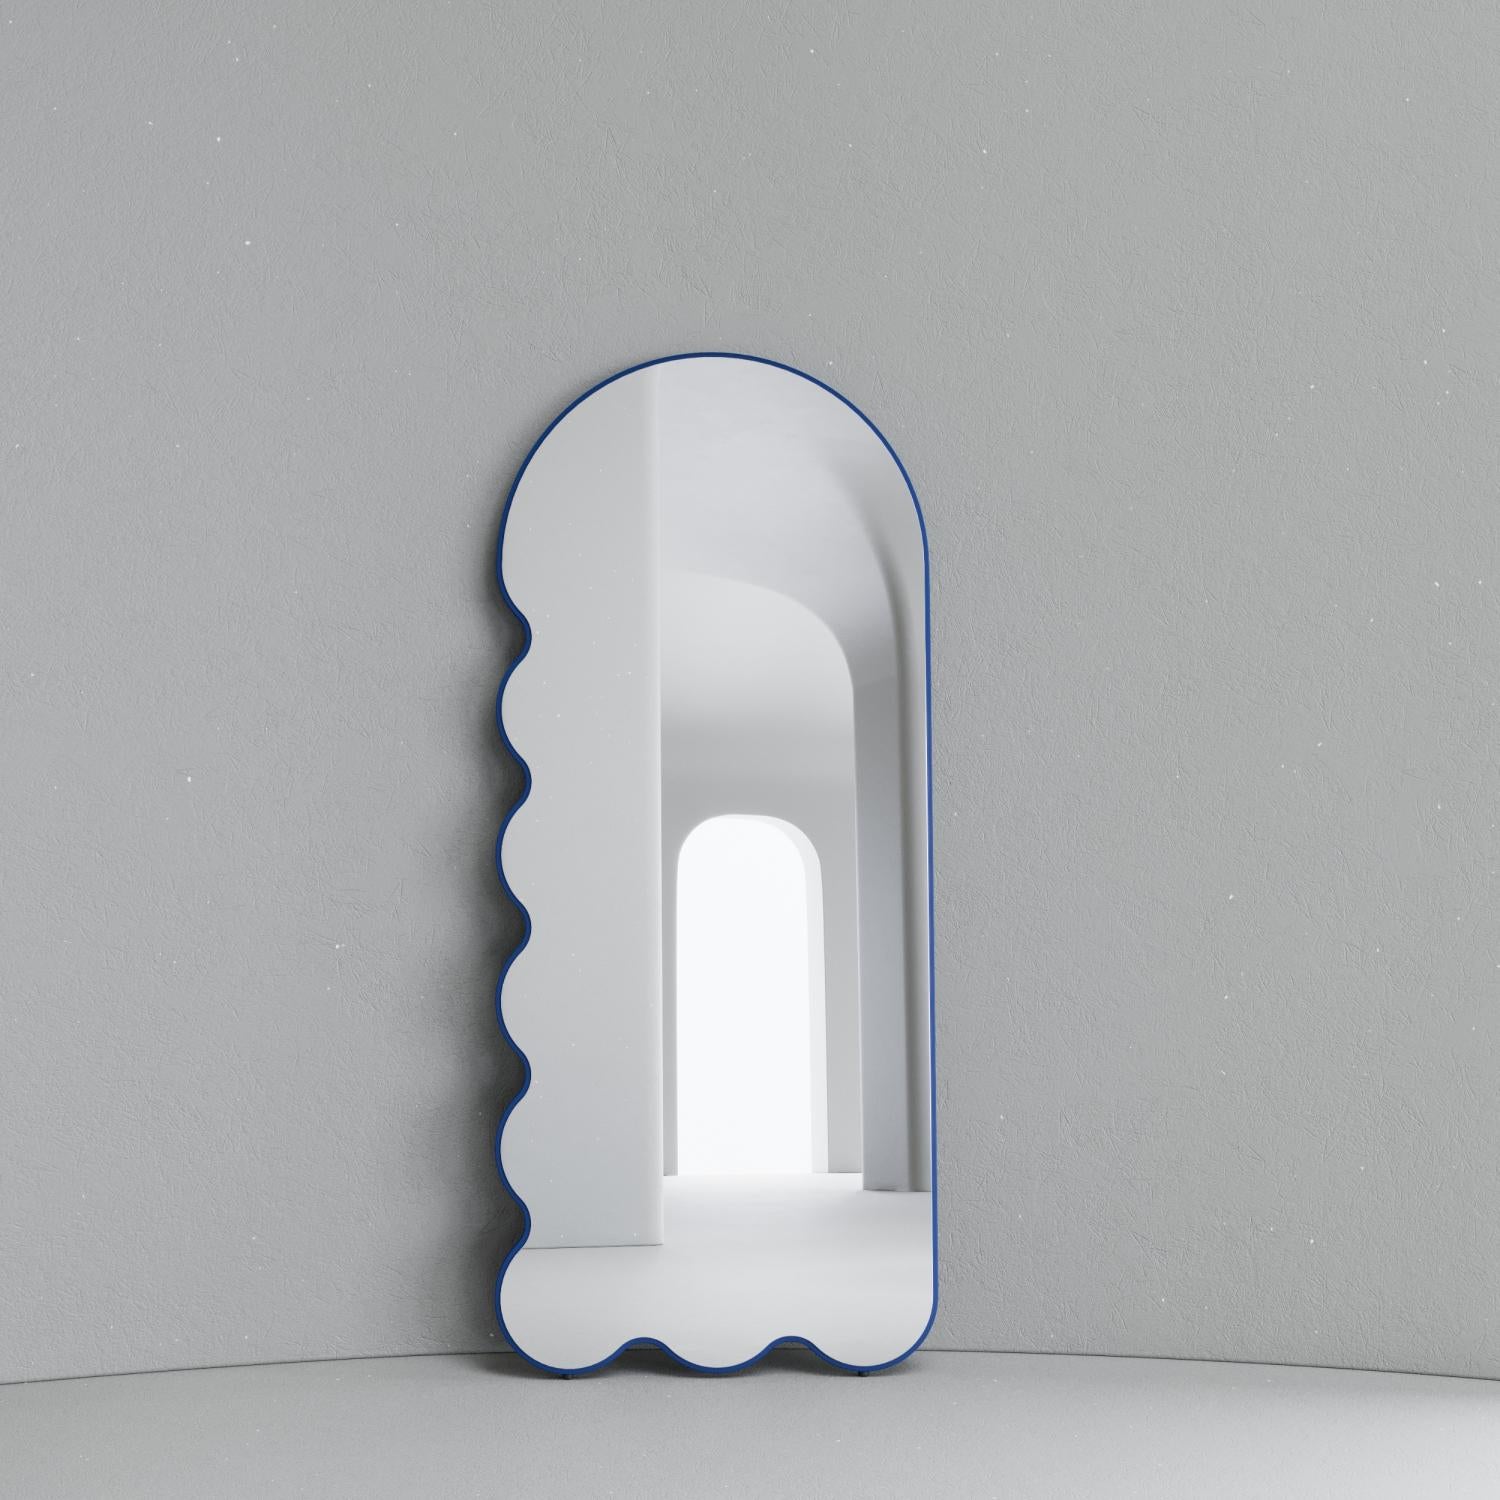 Miroir contemporain 'Archvyli L8' par Oitoproducts.

Dimensions :
L 78 cm x H 180 cm x P 4 cm
L 37 in x H 71 in x D 1.3 in

MATERIAL : Peinture écologique à l'eau MDF, miroir en verre argenté, pieds en caoutchouc spécial.

À propos de
Un miroir